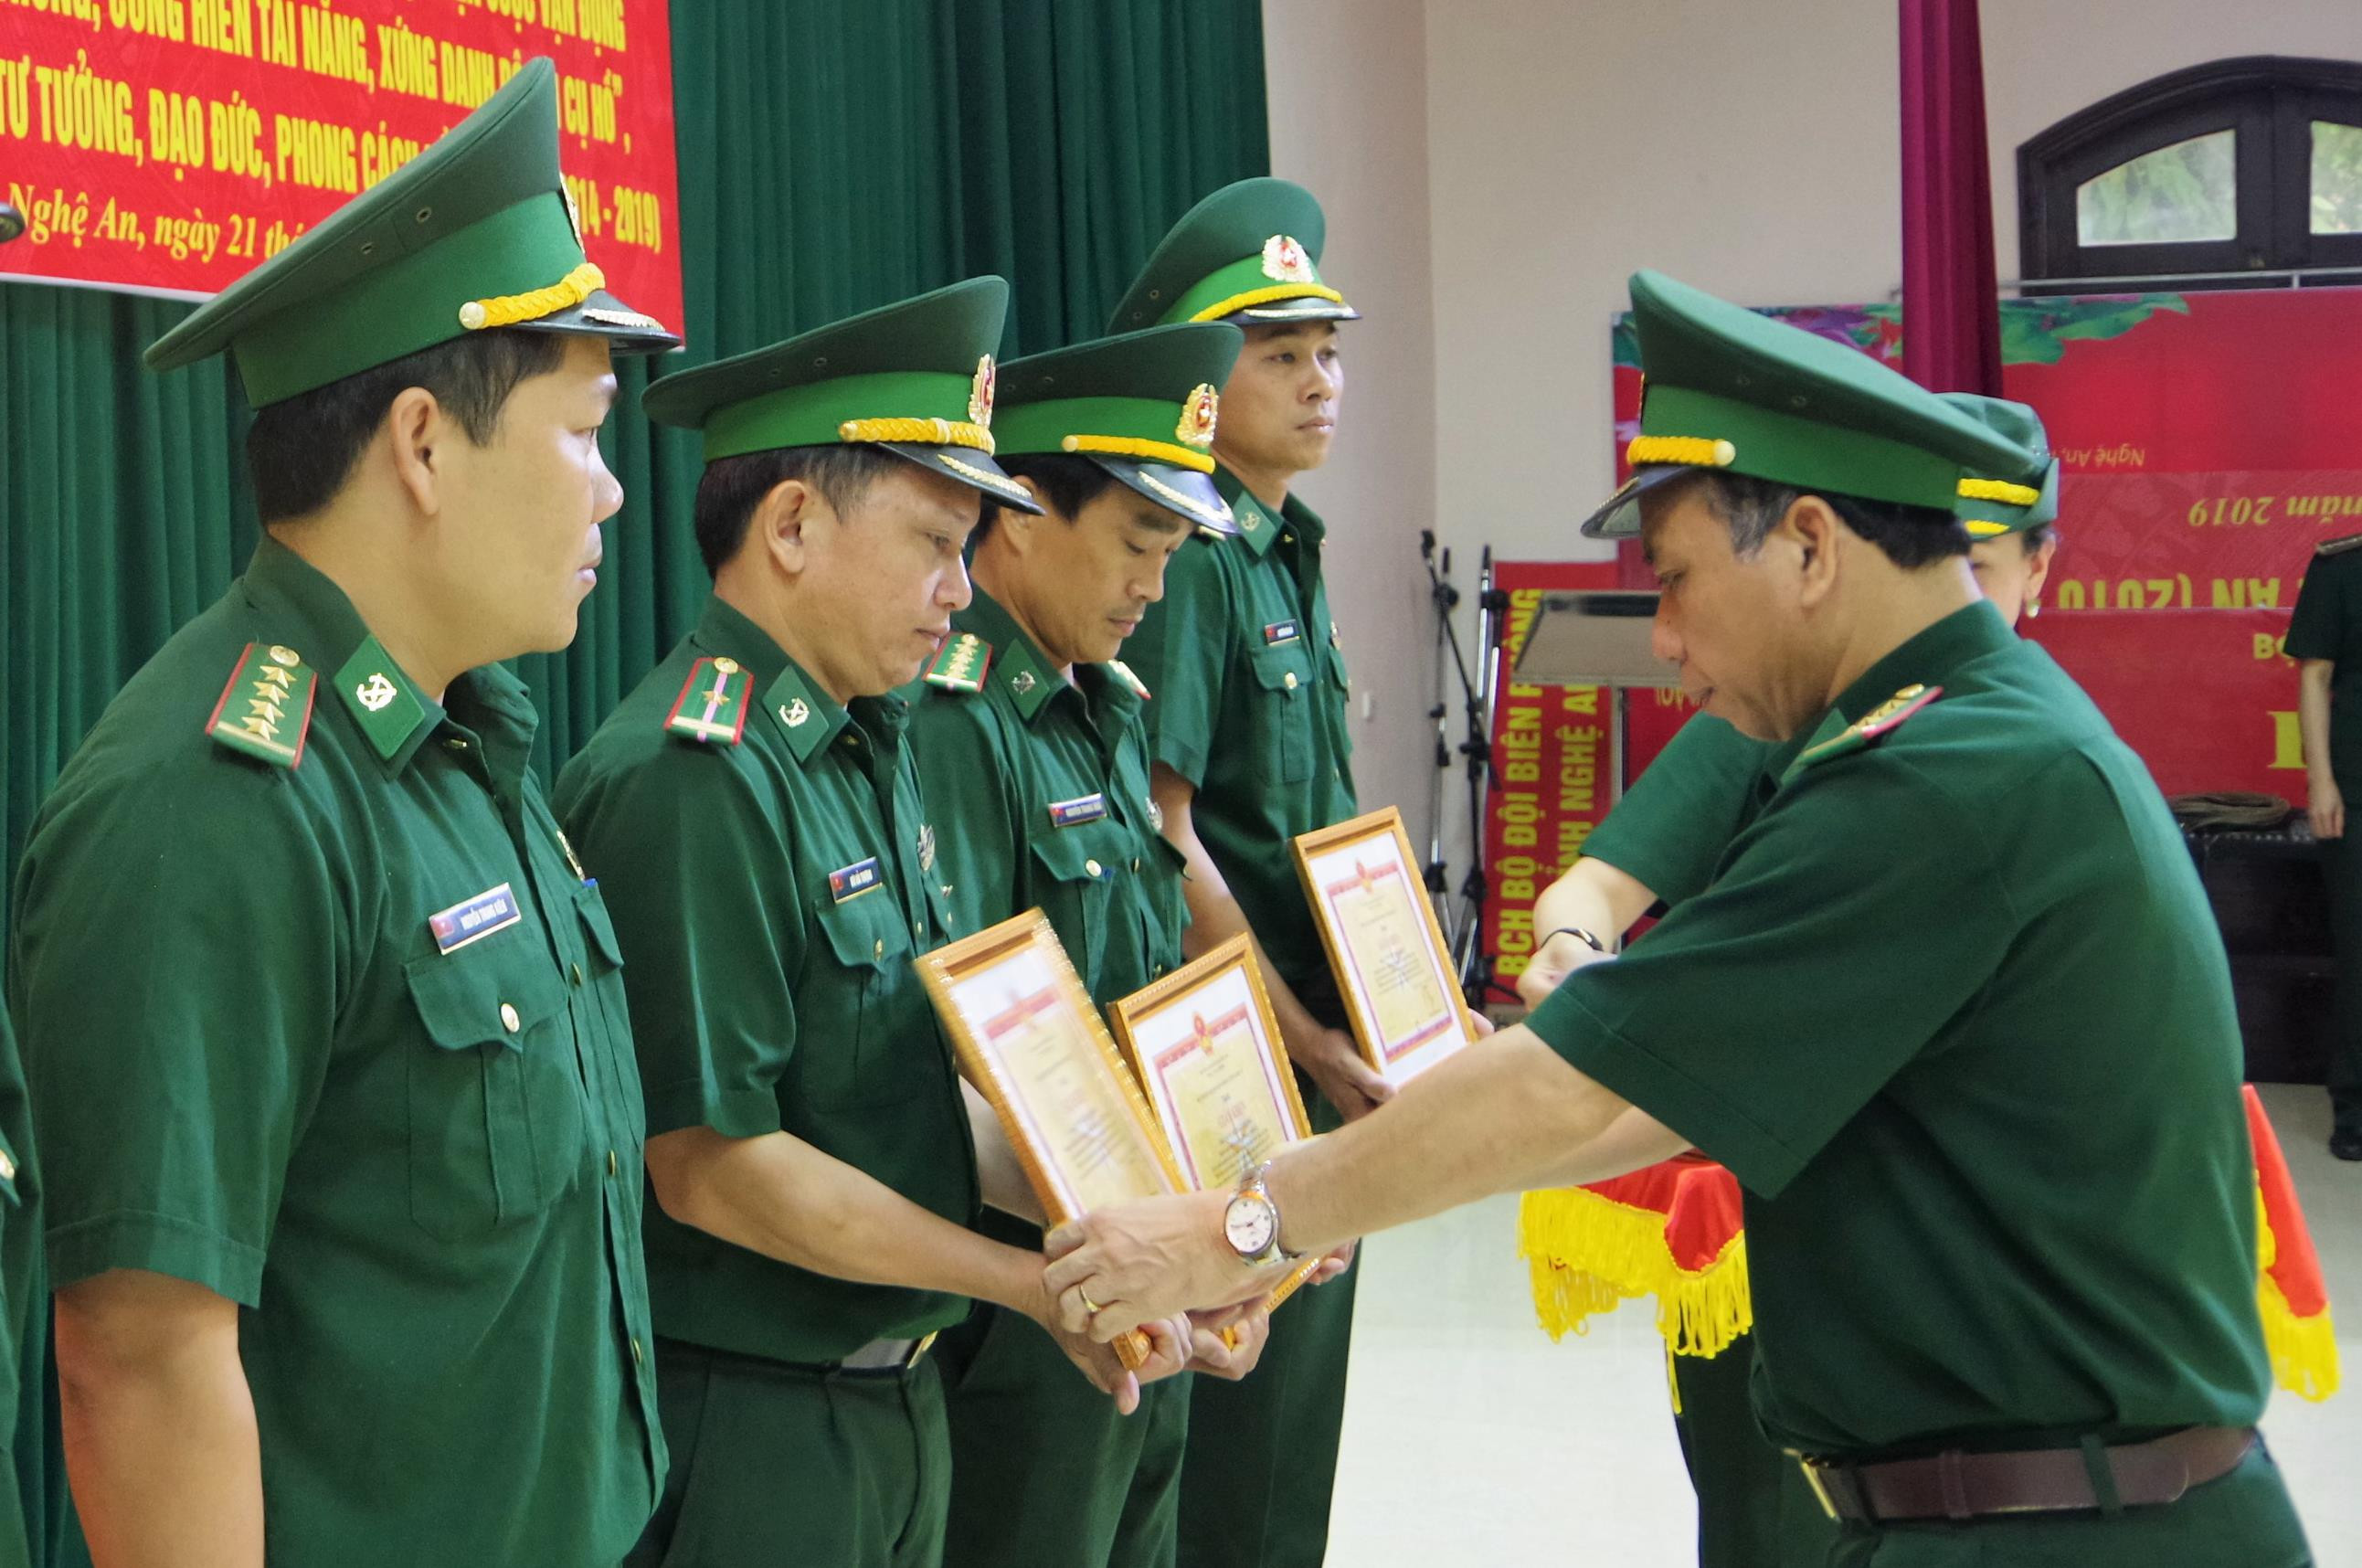 Đại tá Trần Hải Bình - Chỉ huy trưởng BĐBP Nghệ An trao thưởng cho các điển hình tiên tiến. Ảnh: Hùng Phong